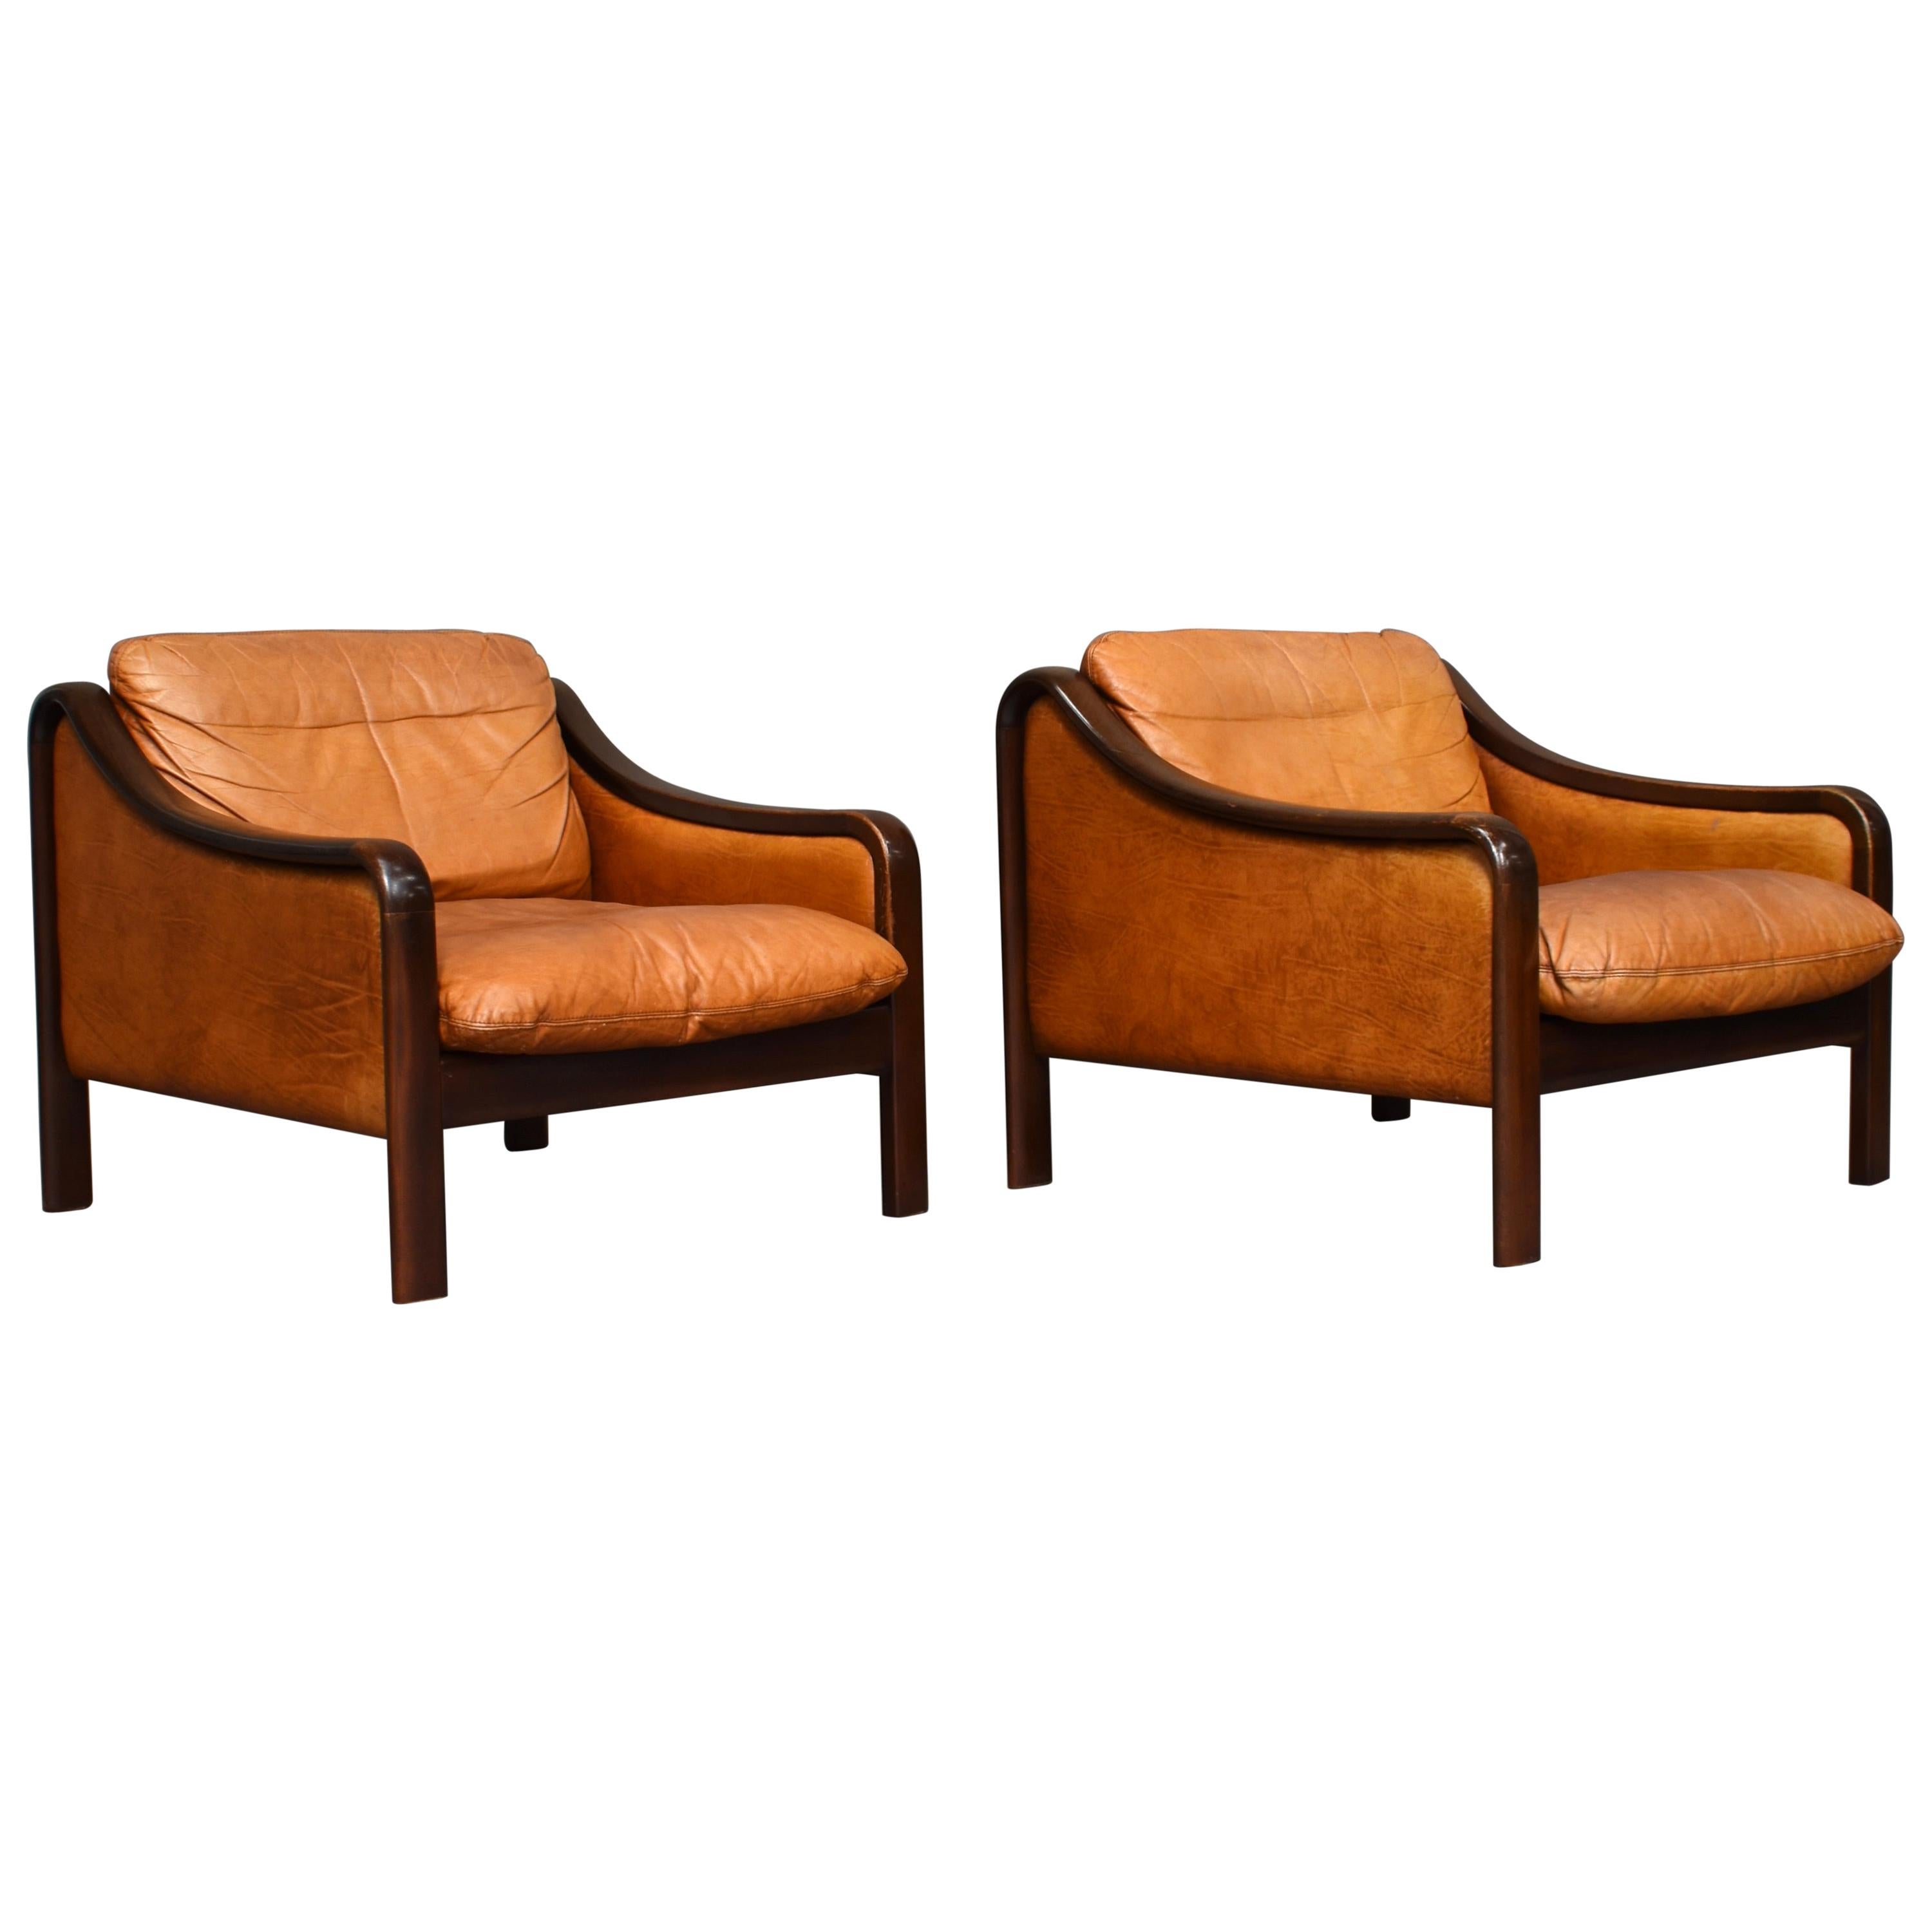 Italian Lounge Chairs in Tan Leather, Italy, circa 1950